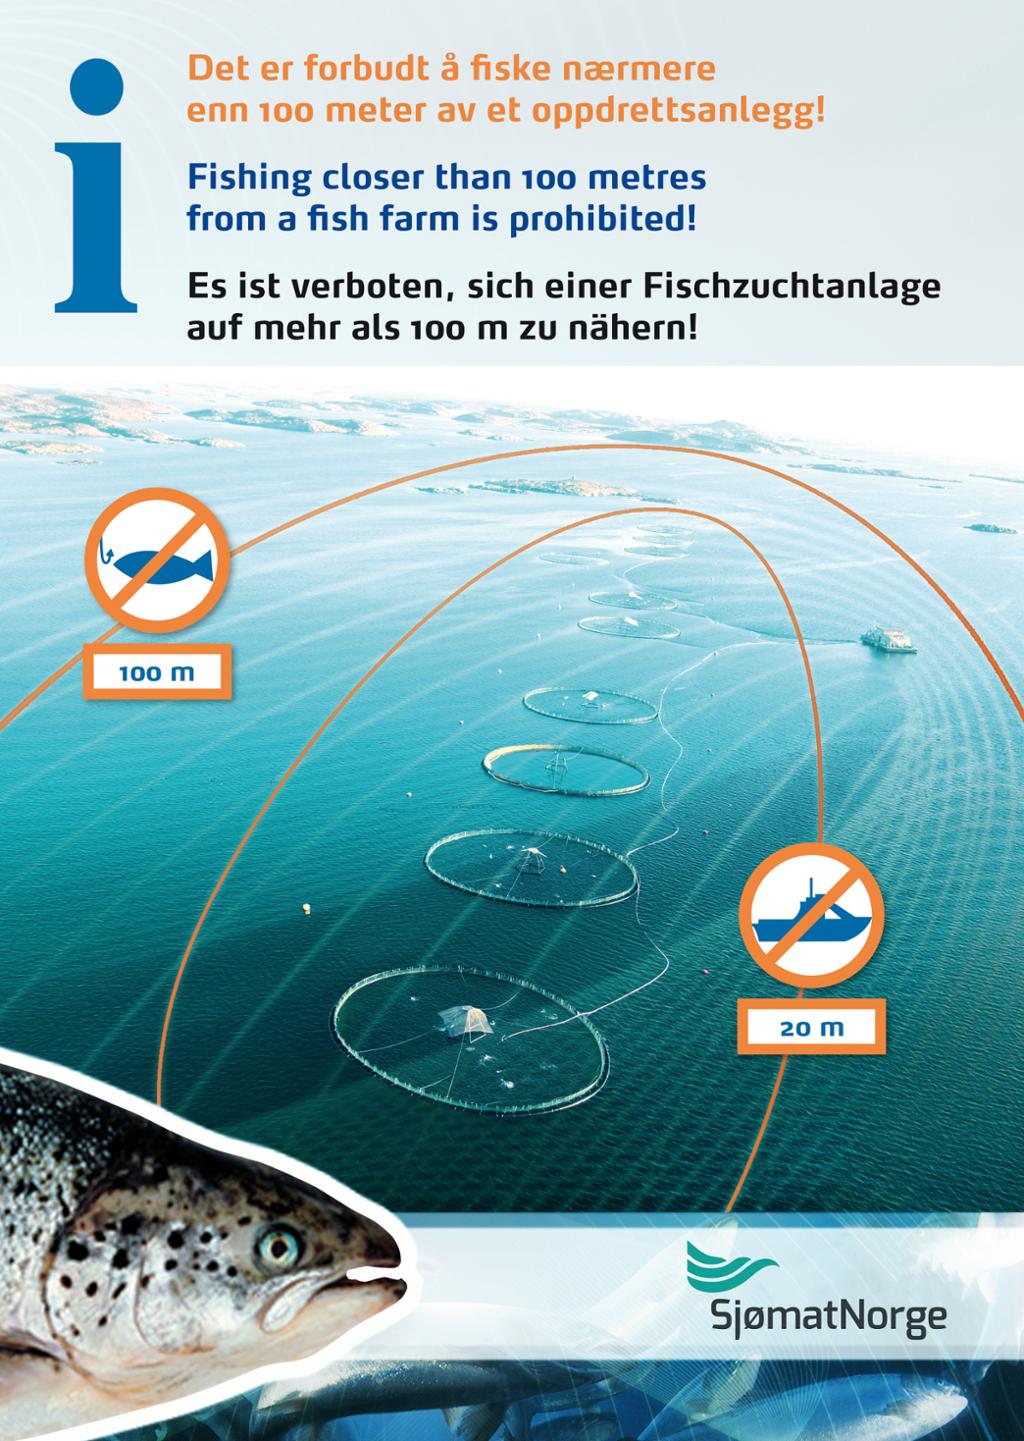 Plakat om ferdselsforbud ved oppdrettsanlegg med tekst på norsk, engelsk og tysk. Illustrasjon.